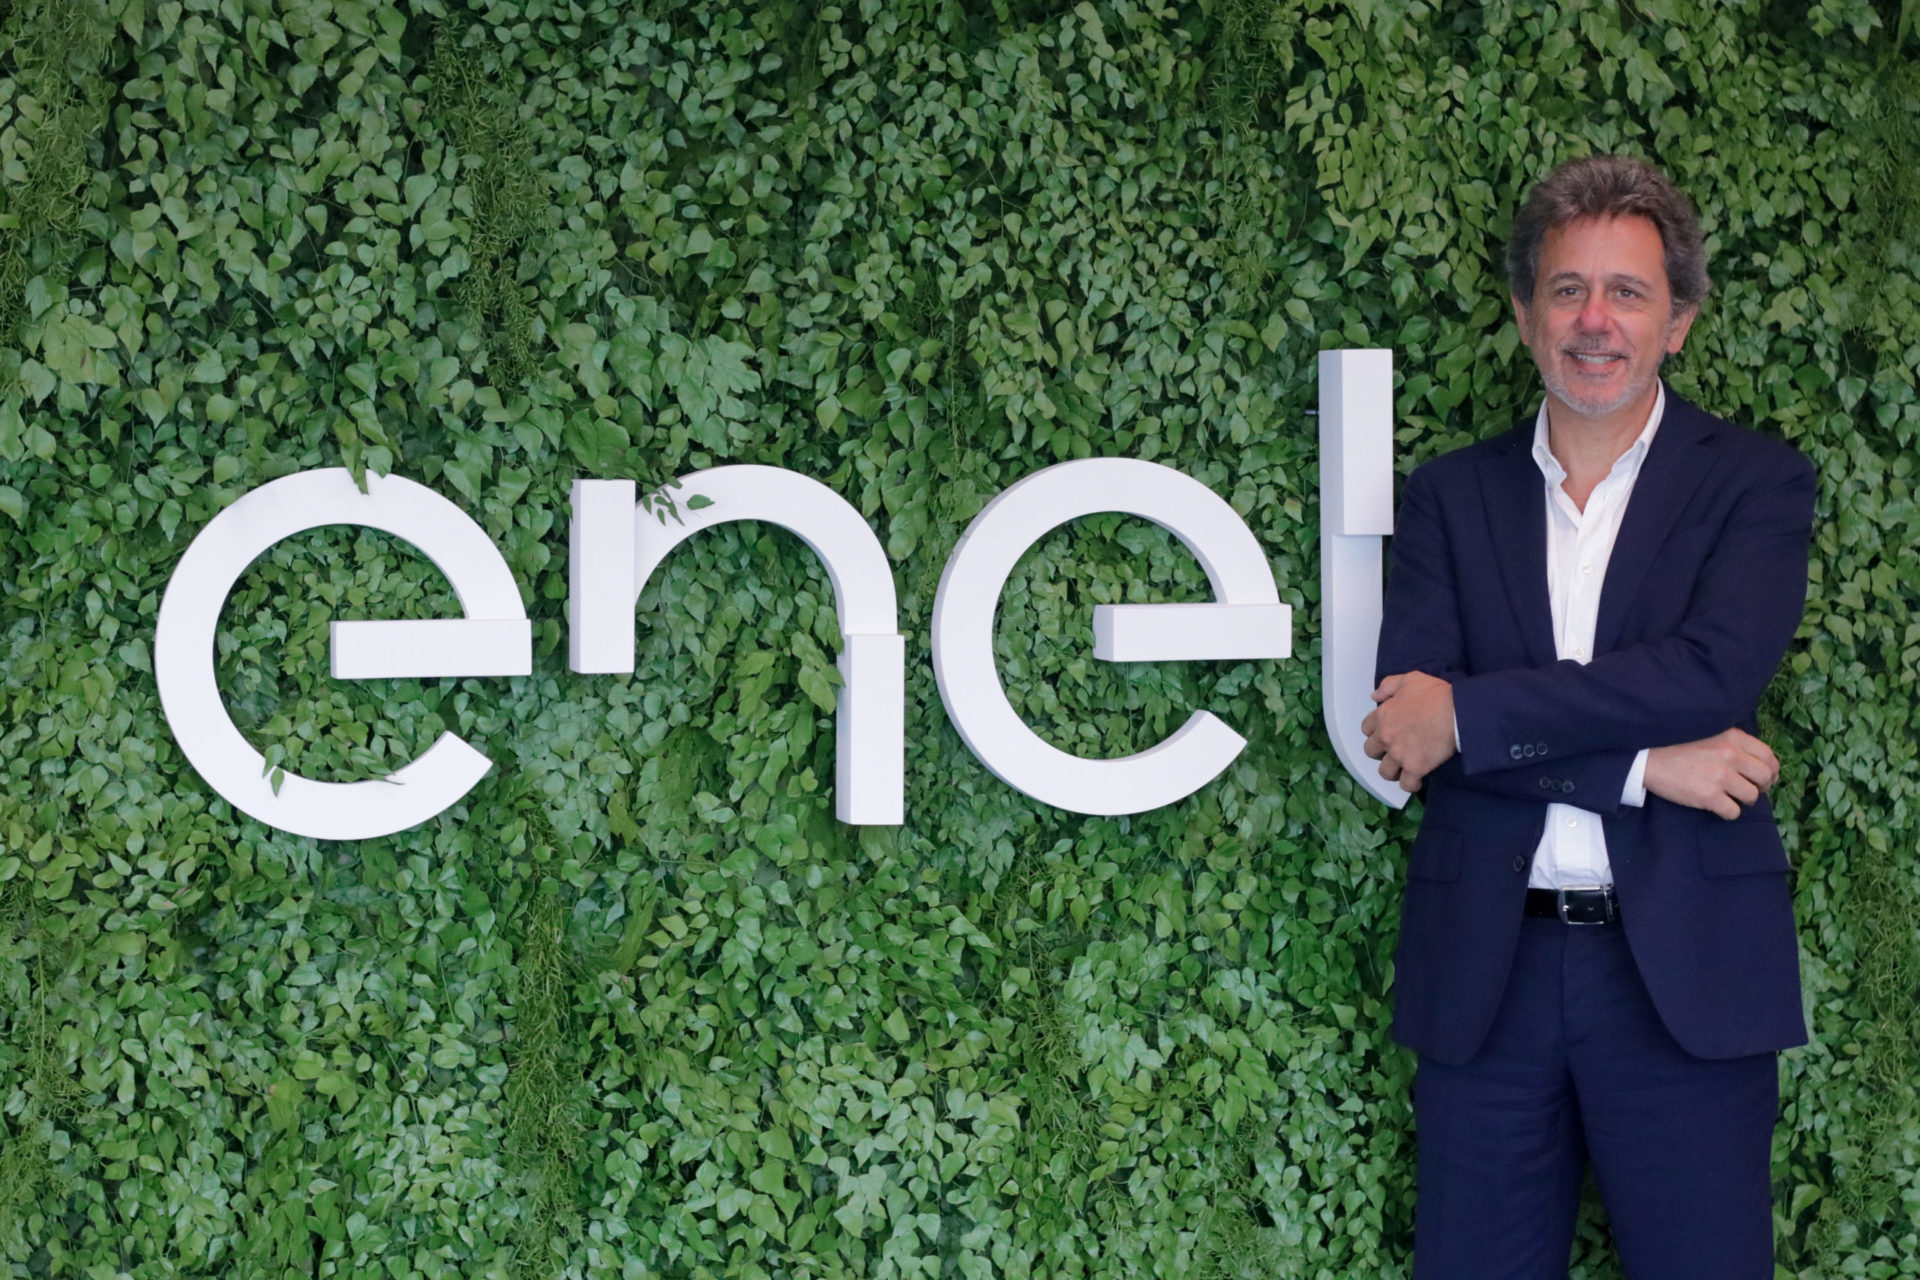 Enel Brasil - Energia para mudar o mundo para melhor.